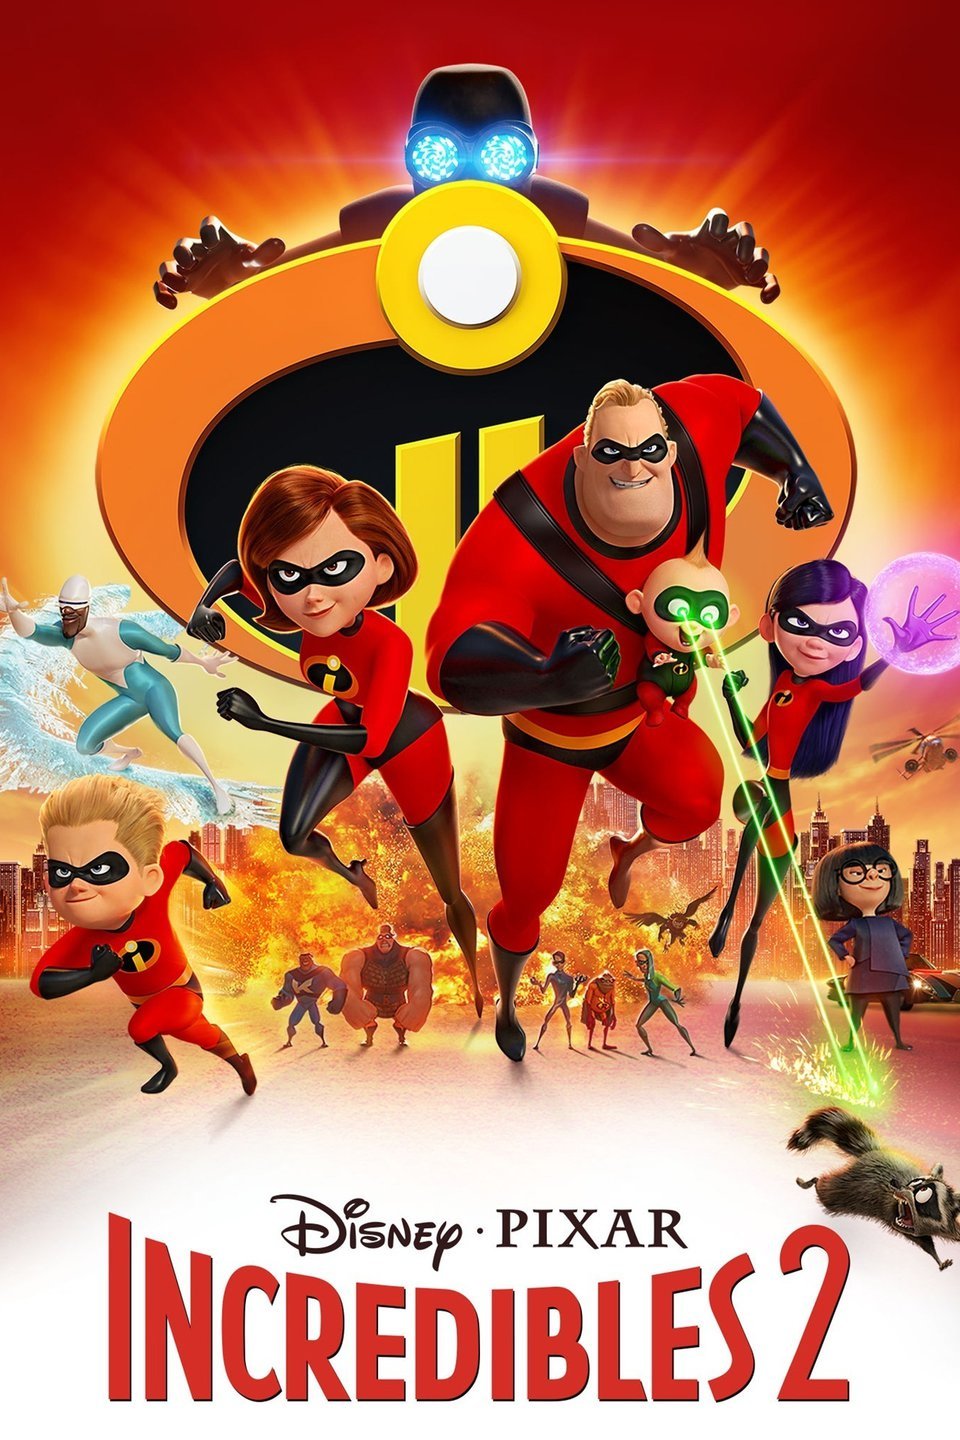 [MINI Super-HQ] Incredibles 2 (2018) รวมเหล่ายอดคนพิทักษ์โลก 2 [1080p] [พากย์ไทย 5.1 + เสียงอังกฤษ DTS] [บรรยายไทย + อังกฤษ] [เสียงไทย + ซับไทย]